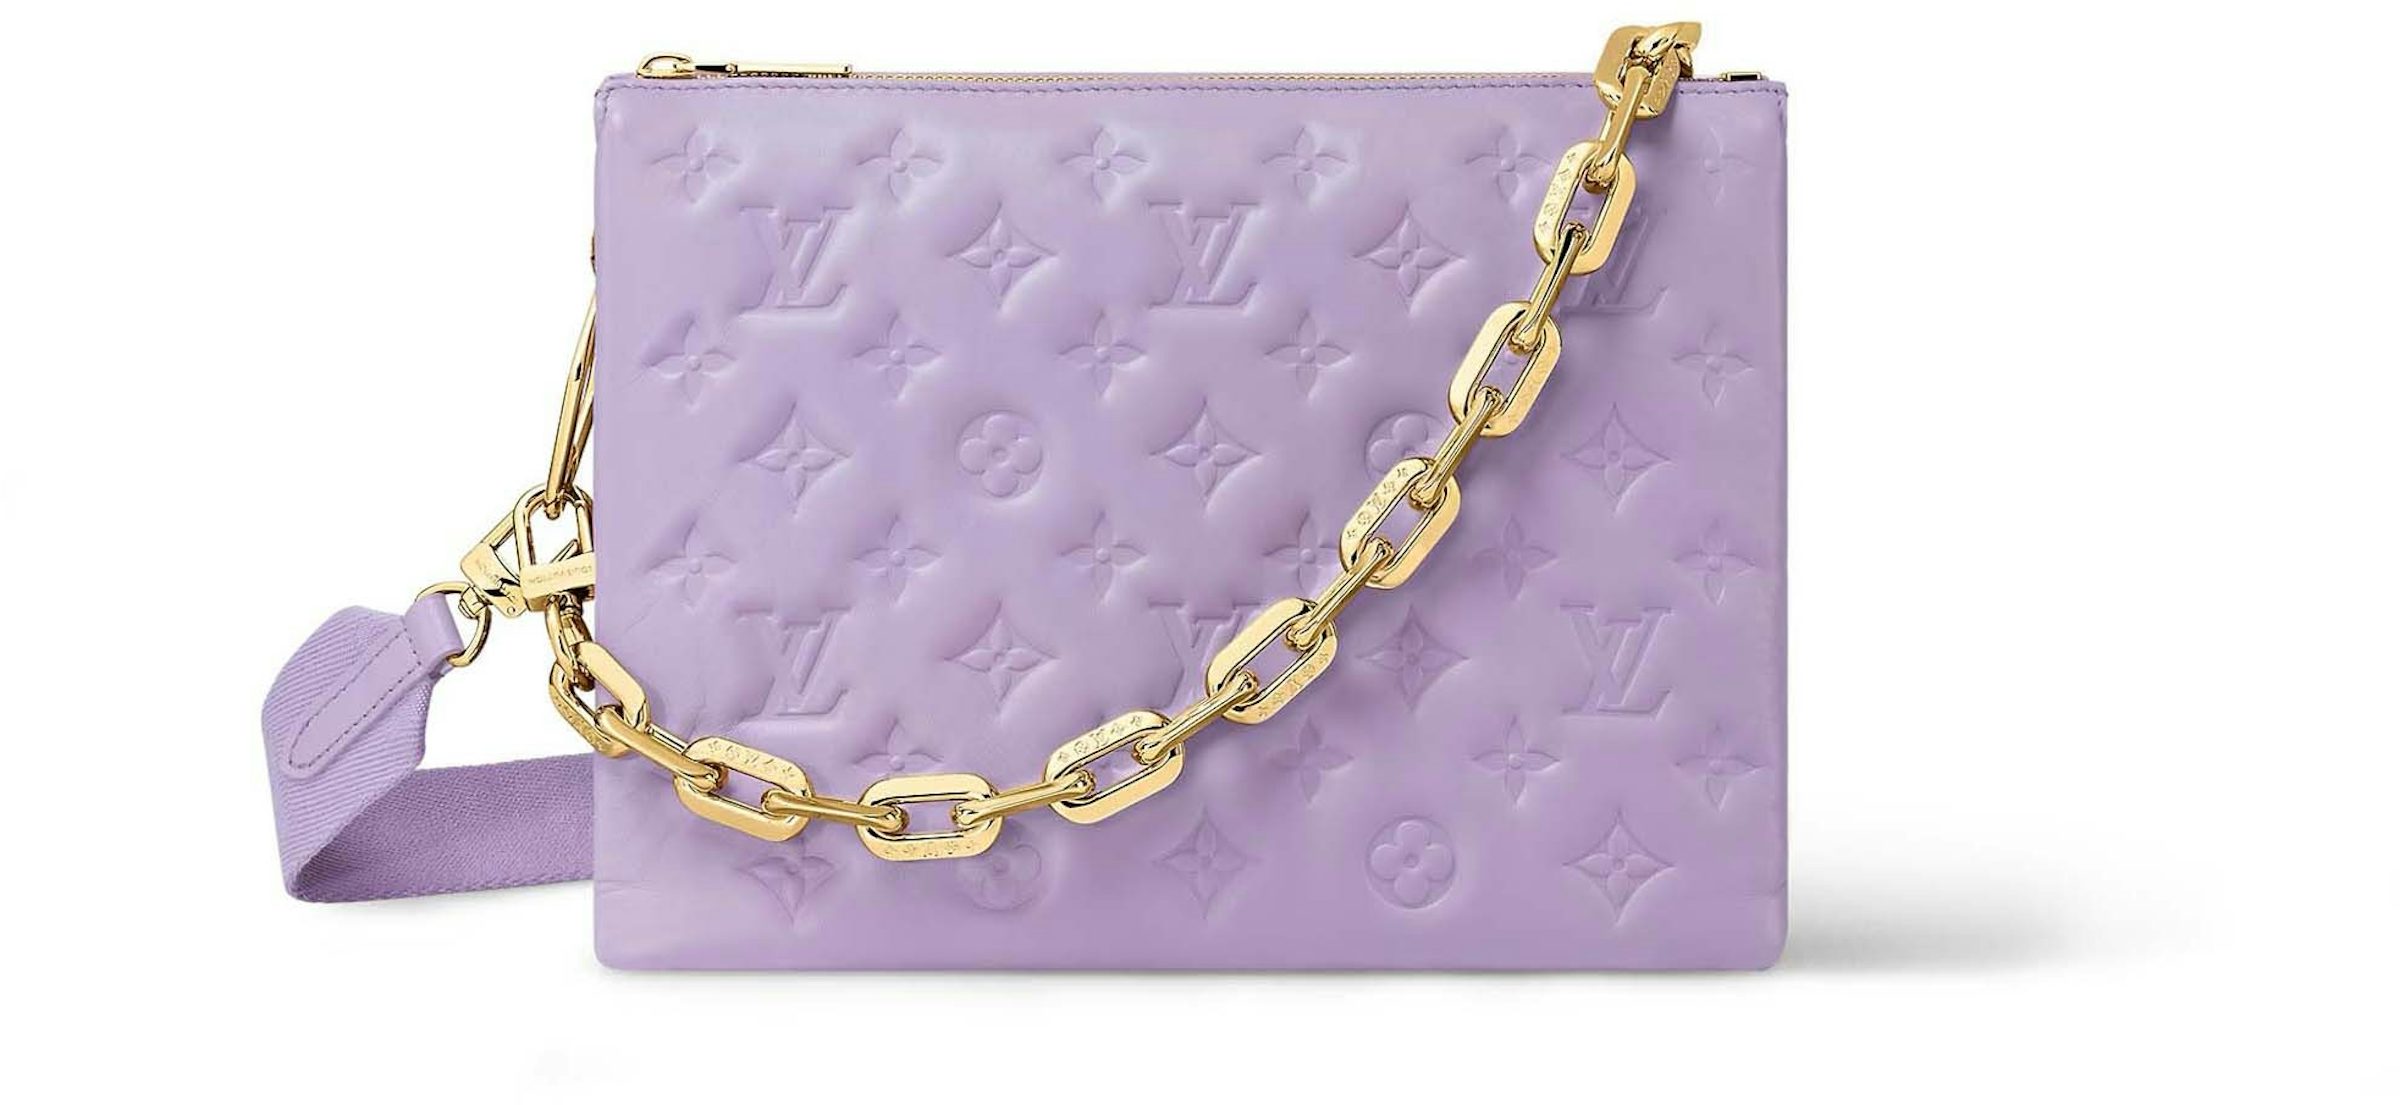 Louis Vuitton Coussin belt bag. Colors: black, purple orchid